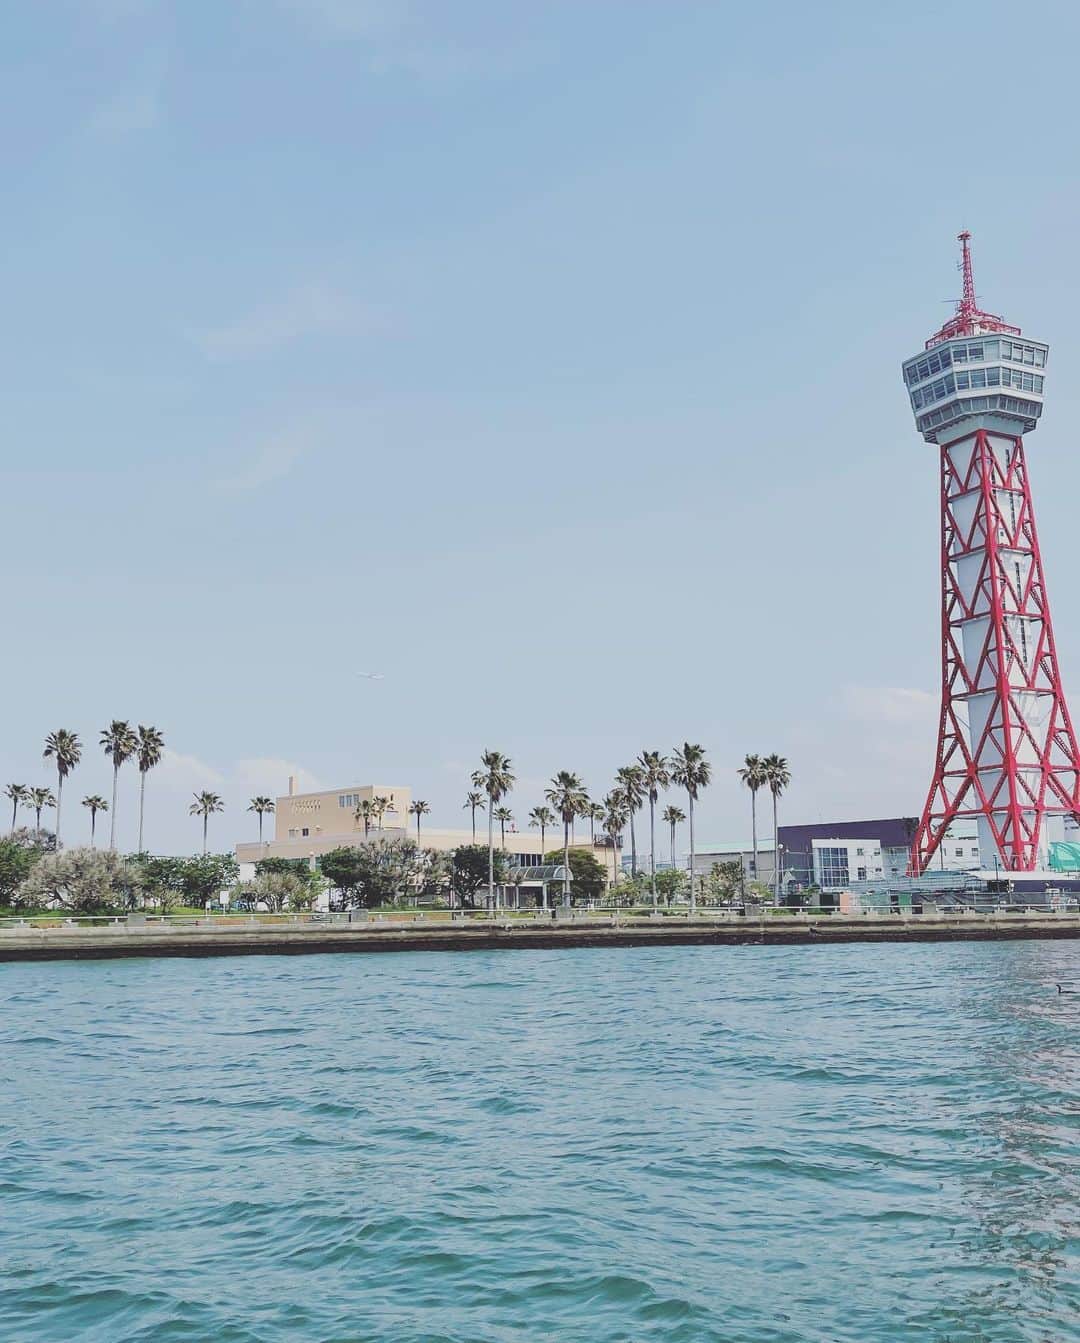 光永亮太さんのインスタグラム写真 - (光永亮太Instagram)「今日のFM COCOLO「MOVE ON SATURDAY」 の「赤い風船 TRAVEL UPDATE」でご紹介した内容を改めて！  大阪から新幹線を使って博多までは2時間半。  9年ぶりに訪れた福岡、めちゃくちゃ良かったんです！  まずは活気あふれる福岡の街並みを水上から楽しみたいということで、まずは九州一の繁華街・中洲、観光スポットとして人気のキャナルシティなどを通る、那珂川を走る遊覧船「中洲クルーズ」に乗ってきました！中洲から福岡湾まで周遊してくれる30分の旅。大人1人¥1,000とお手軽。乗り込むとガイドさんが出迎えてくれて、いざ出発！川沿いに佇む名所などを分かりやすく案内してくれます。とにかく風が気持ちいい！これからの季節は最高だと思います。しかも博多湾まで出てくれるので、ちょっとした冒険をした気分。一通り観光して疲れを水上で癒すもよし、夜にネオン輝く中洲の街を水上から眺めるもよし！昼と夜では表情が違うので2回乗っても良いかもしれません。水上から眺める福岡の街はまた違った側面があって街の位置関係を把握できるので「中洲クルーズ」オススメします！     その後向かったのは中洲クルーズから徒歩5分ほど。博多の総鎮守、櫛田神社。博多っ子からは「お櫛田さん」の名前で親しまれている博多祇園山笠が奉納される神社。6月を除き、飾り山笠が1年を通して展示されているのですが、その飾り山笠がとにかく壮観で大迫力！！高さ10メートルはあるでしょうか。思わず「おぉ〜！」と声を上げてしまうほどの迫力でした。ちなみに博多祇園山笠の本番は7月。7月15日の追い山笠がお祭りのクライマックス。それに合わせて行くのもアリですね！旅の安全を祈りつつ、ご挨拶。  続いて櫛田神社から徒歩5分。那珂川沿いに佇む福岡の人気スポット、キャナルシティへ！敷地面積約4万3500平方メートルを誇る大型複合商業施設。ただのショッピングモールと思うことなかれ！敷地中央を流れる運河を中心に、ショッピングモールやレストラン、ホテル、映画館、劇場などの建物が並んでいて、さらに3Dプロジェクションマッピングと噴水のアクアパノラマなどエンターテイメントも楽しめる場所。まるでおもちゃ箱のようなワクワクスル場所僕は博多に行くと必ずここを訪れてショッピングに勤しみます。とにかくいろんなお店が入っていて飽きません！観光の合間にショッピングを楽しむならば間違いなくここです！  全体的に海外のショッピングモールのような空間で、ここが日本であることをいい意味で忘れさせてくれる都会のオアシスです。     夜の博多に繰り出す前にホテルにチェックイン。今回宿泊させていただいたのはホテルニューオータニ博多。福岡を代表するホテルの一つです。まずエントランスを入ると、床は大理石で格式が高く、ロビーがとにかく広い！そしてベルマンのきめ細やかな対応に触れることができます。チェックインを済ませエレベーターを上がると、部屋までの長い回廊がとにかく気品漂っているんです！今回宿泊させて頂いたのはエグゼクティブツイン。部屋の扉を開けると、シックな空間に高級感漂う洗練されたインテリアが目に飛び込んできます！この時点でテンション爆上がり。嬉しかったのは窓側にワーキングデスクが置かれていたこと。福岡の街を眺めながらパソコンに向かえるという贅沢を味わうことができました。とにかく清潔で美しい！そして居心地が抜群でした。朝、ドアに新聞を届けてくれるサービスも個人的に嬉しかった！スタッフの方々もとにかく丁寧で、きめ細やかなサービスはさすが！という感じでした。  そしてニューオータニ博多の朝食も美味しかった！  会場が洋食中心のモーニングビュッフェか和定食かで会場が分かれているのですが、僕はモーニングビュッフェの方に行きました。とにかくパンの種類が豊富！デニッシュだけでも3種類、クロワッサンもプレーンとチーズ入りの2種類。そレニ加えて食パン、チョコチップマフィン、くるみぱん、バゲットを使ったフレンチトーストとどれを選べば良いか悩んでしまうくらいの種類。そして個人的に刺さったのがオムレツ。目の前でシェフの方が一人前ずつ作ってくれるのですが、プレーン、チーズ、ミックスから選べました。僕は迷わずミックスを注文。中にはネギ、チーズ、そして明太子が入っておりました！さすがは博多！朝食からも福岡の息吹を感じることができたのは嬉しかったです。美味しかった！さすがはニューオータニさん。大満足の朝食でした。   まだまだ博多の魅力をお伝えしたいのですが、今日はここまで！  来週5/6の放送では博多のオススメグルメに迫ります！  @west_akafu  @newotani_hakata_official   #博多 #福岡 #にこta #赤い風船関西版 #中洲クルーズ #櫛田神社 #キャナルシティ博多 #fmcocolo #move765 #光永亮太」4月29日 11時34分 - mitsunagaryota